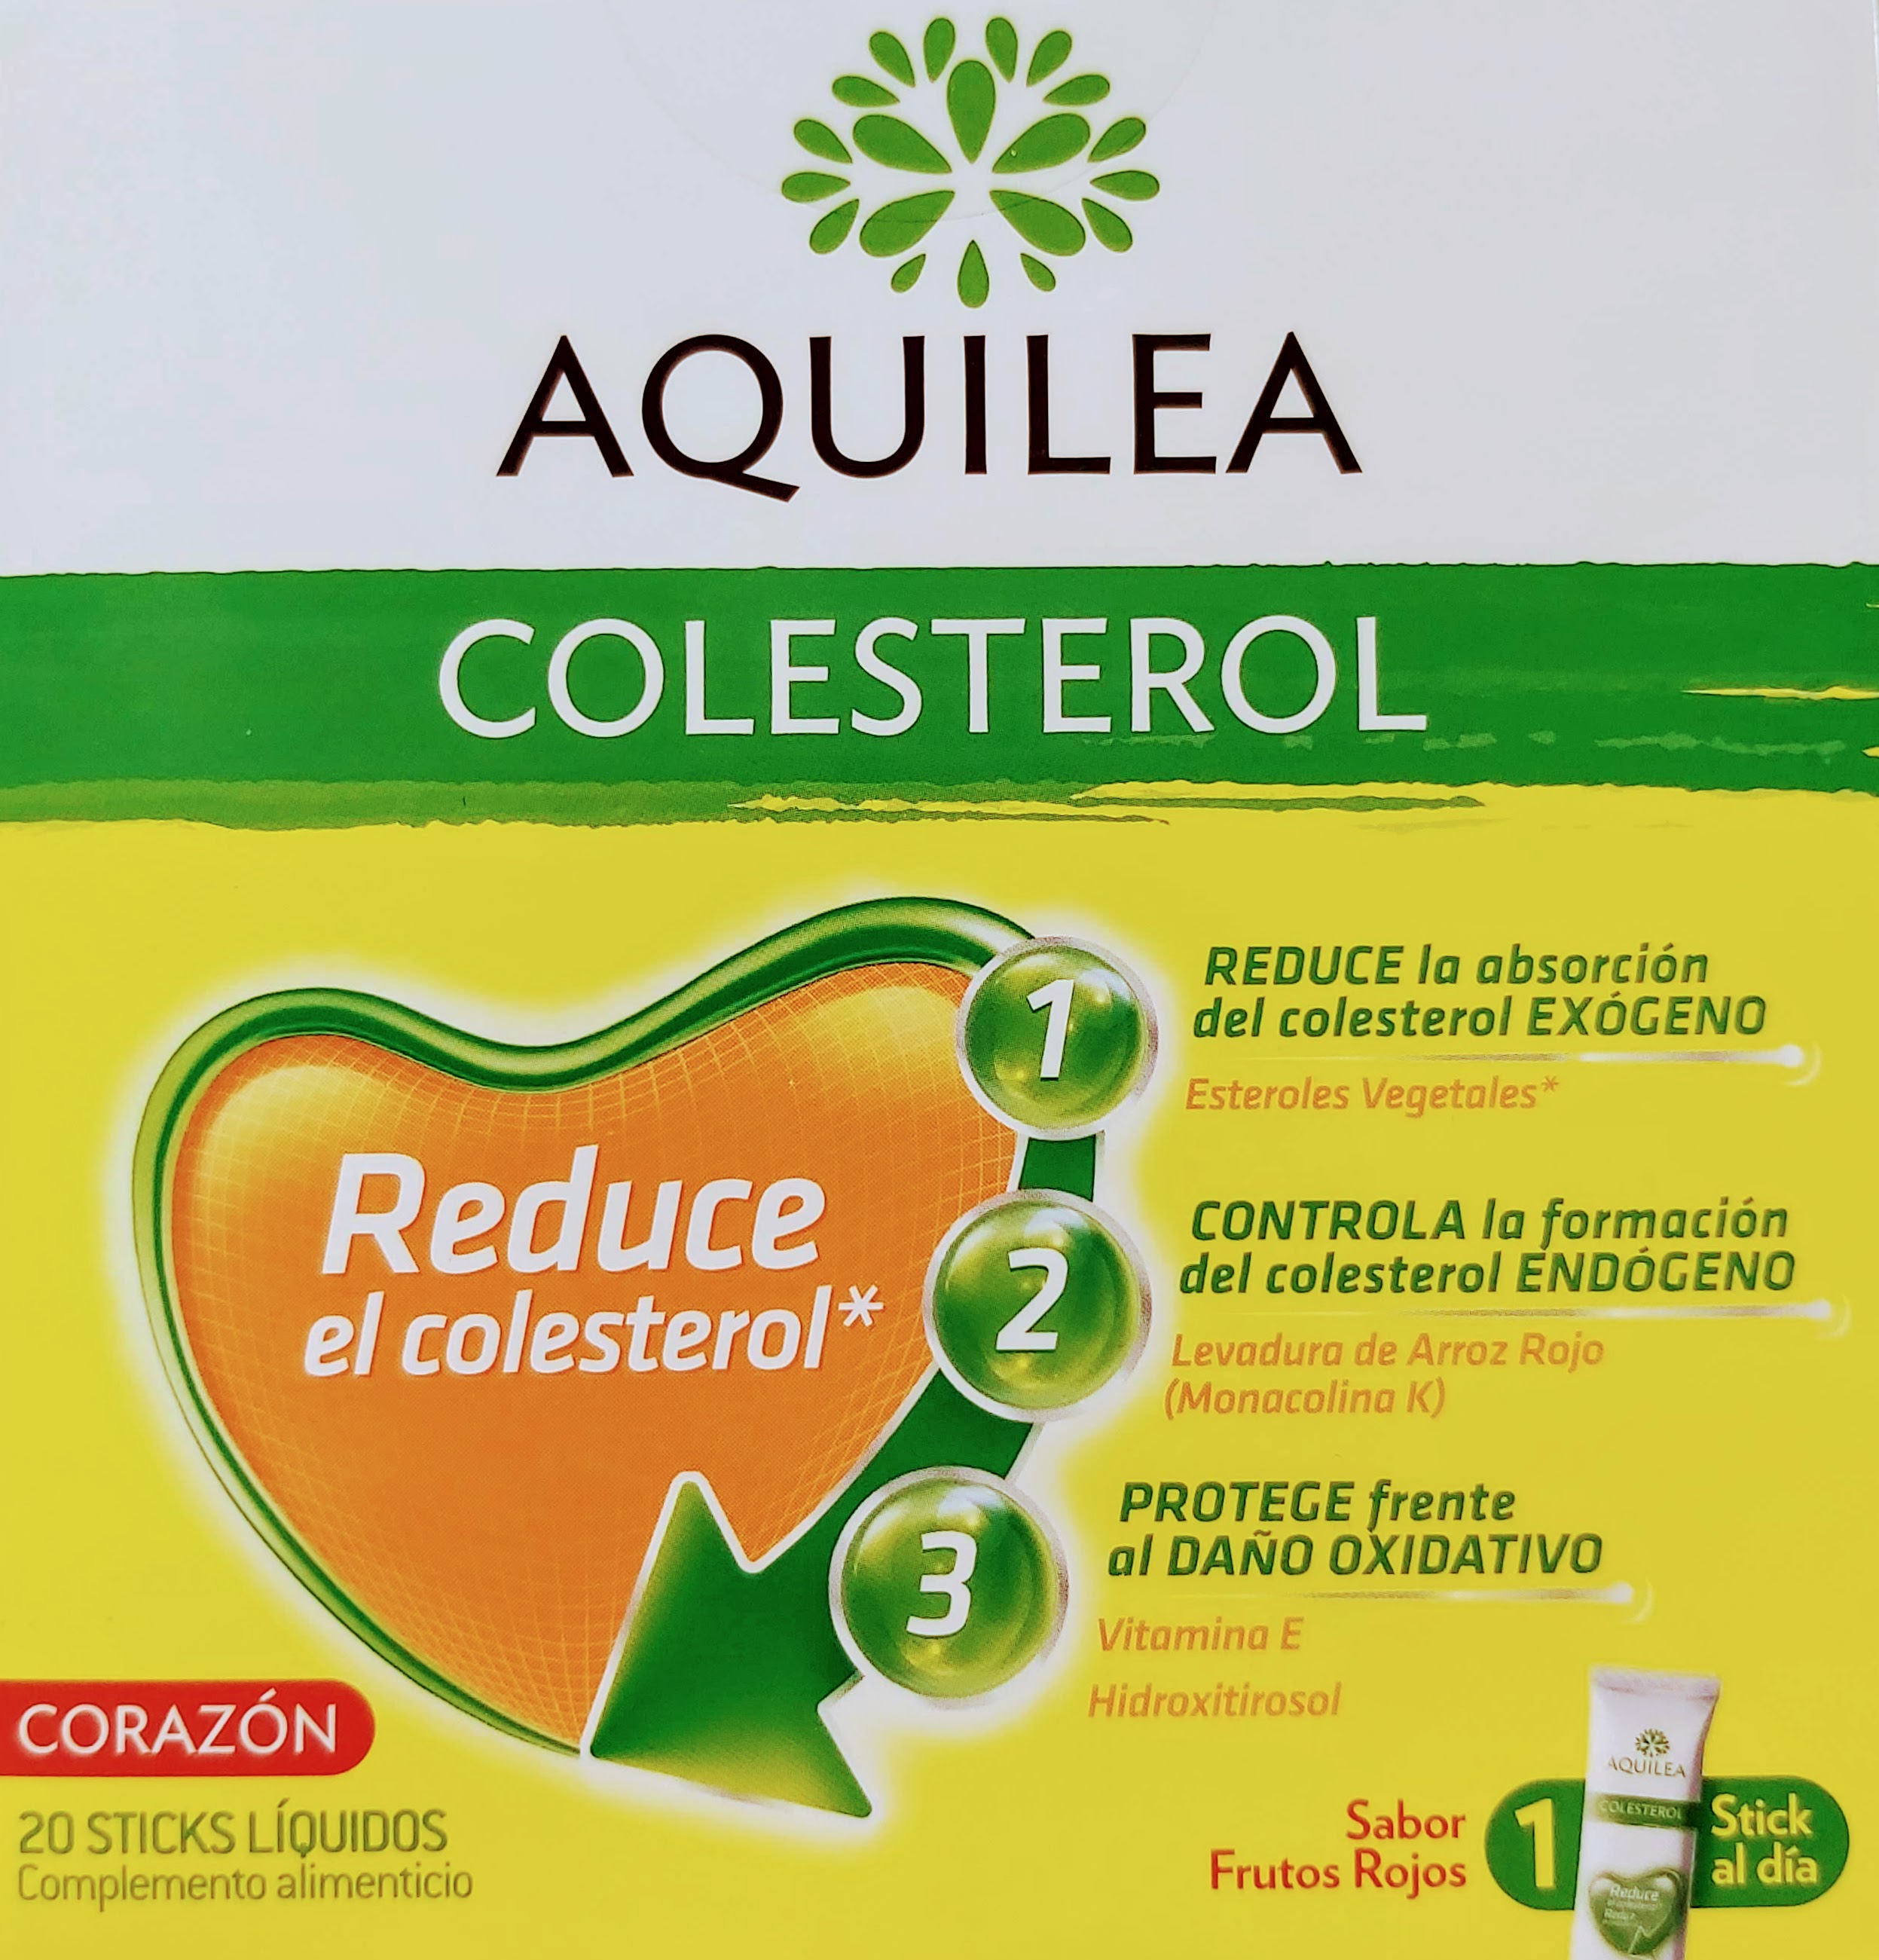 Aquilea Colesterol reduce el colesterol es muy importante mantener un nivel óptimo de colesterol